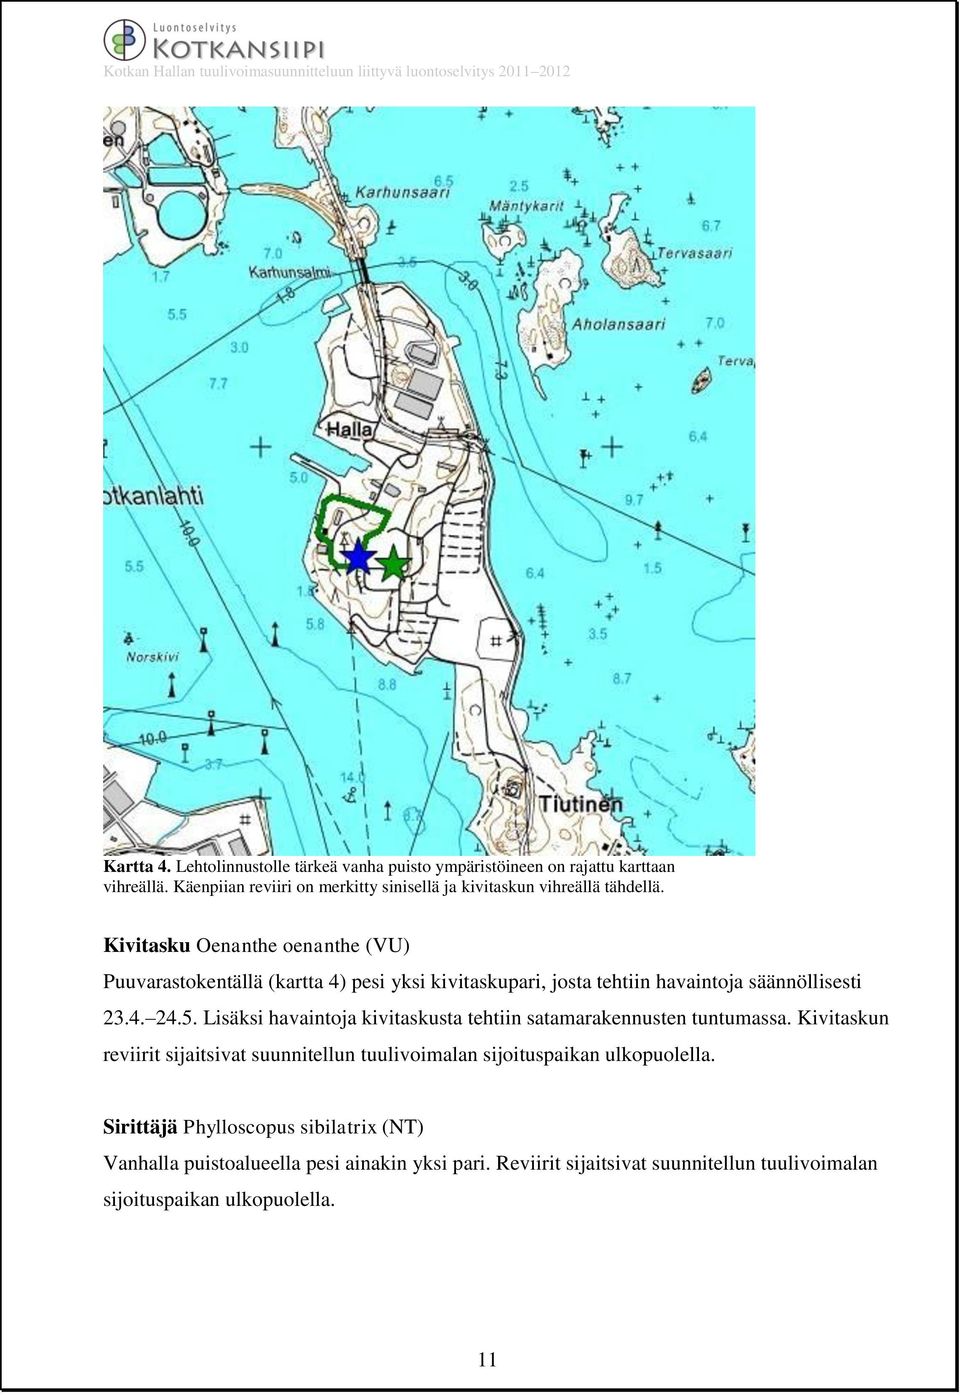 Kivitasku Oenanthe oenanthe (VU) Puuvarastokentällä (kartta 4) pesi yksi kivitaskupari, josta tehtiin havaintoja säännöllisesti 23.4. 24.5.